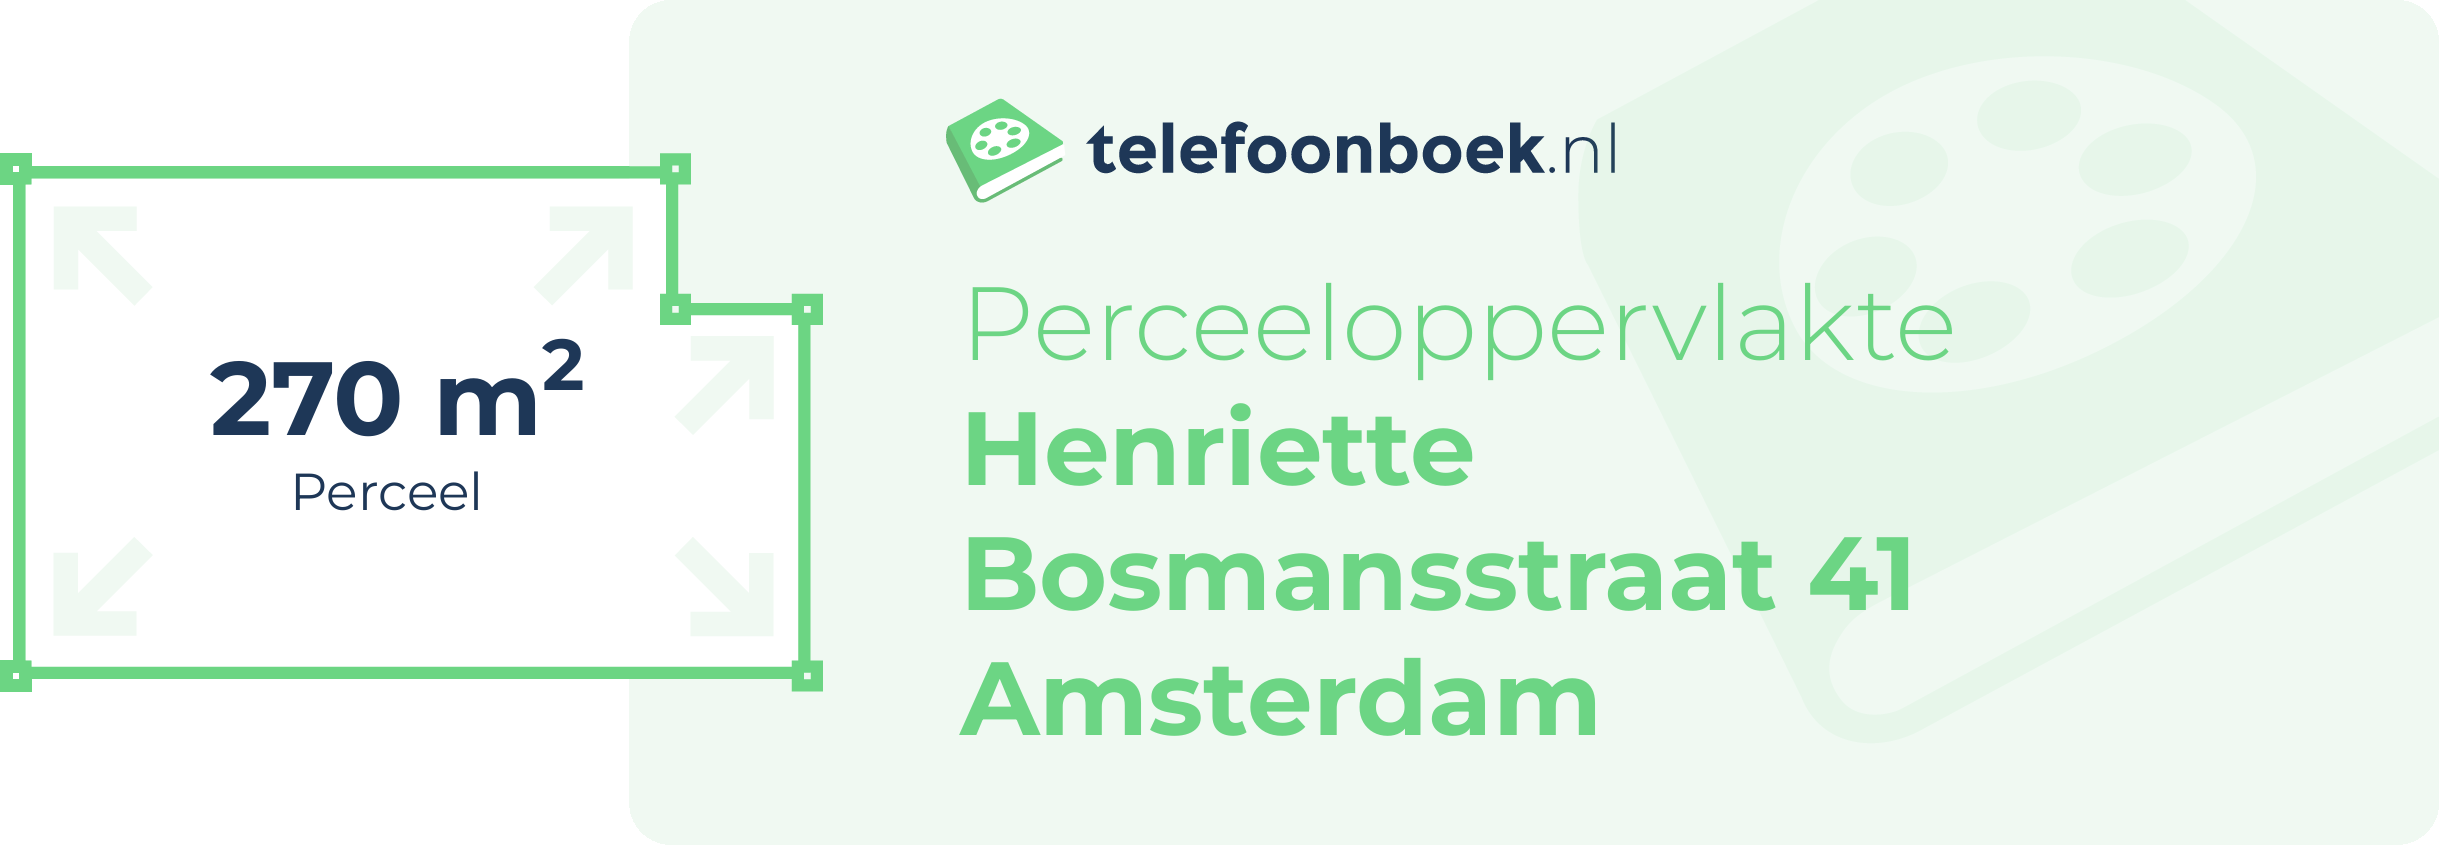 Perceeloppervlakte Henriette Bosmansstraat 41 Amsterdam